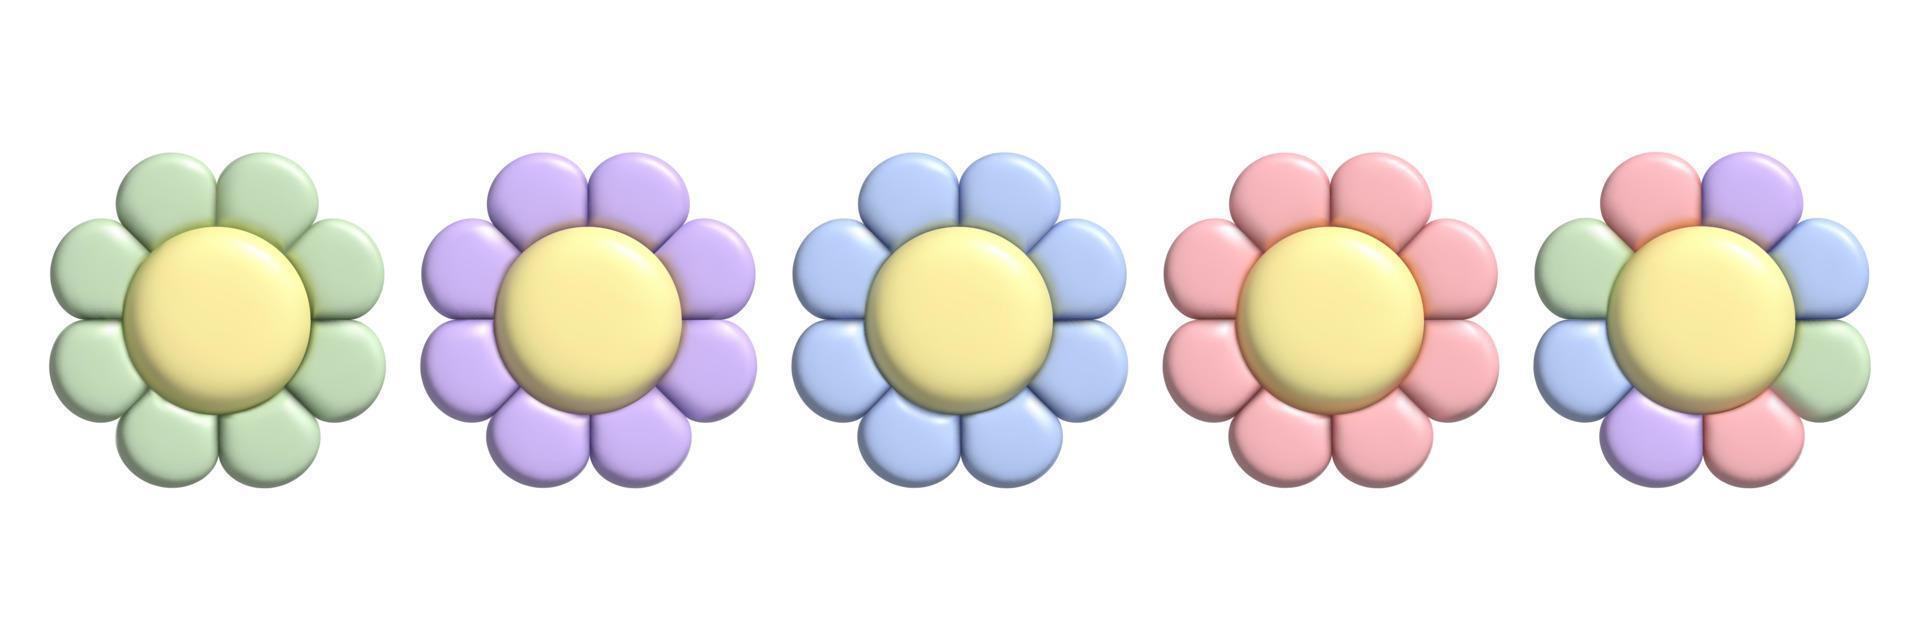 Ensemble de fleurs pastel 3d avec effet de pâte à modeler. autocollants de marguerites mignons de l'an 2000 dans un style plastique tendance. vecteur